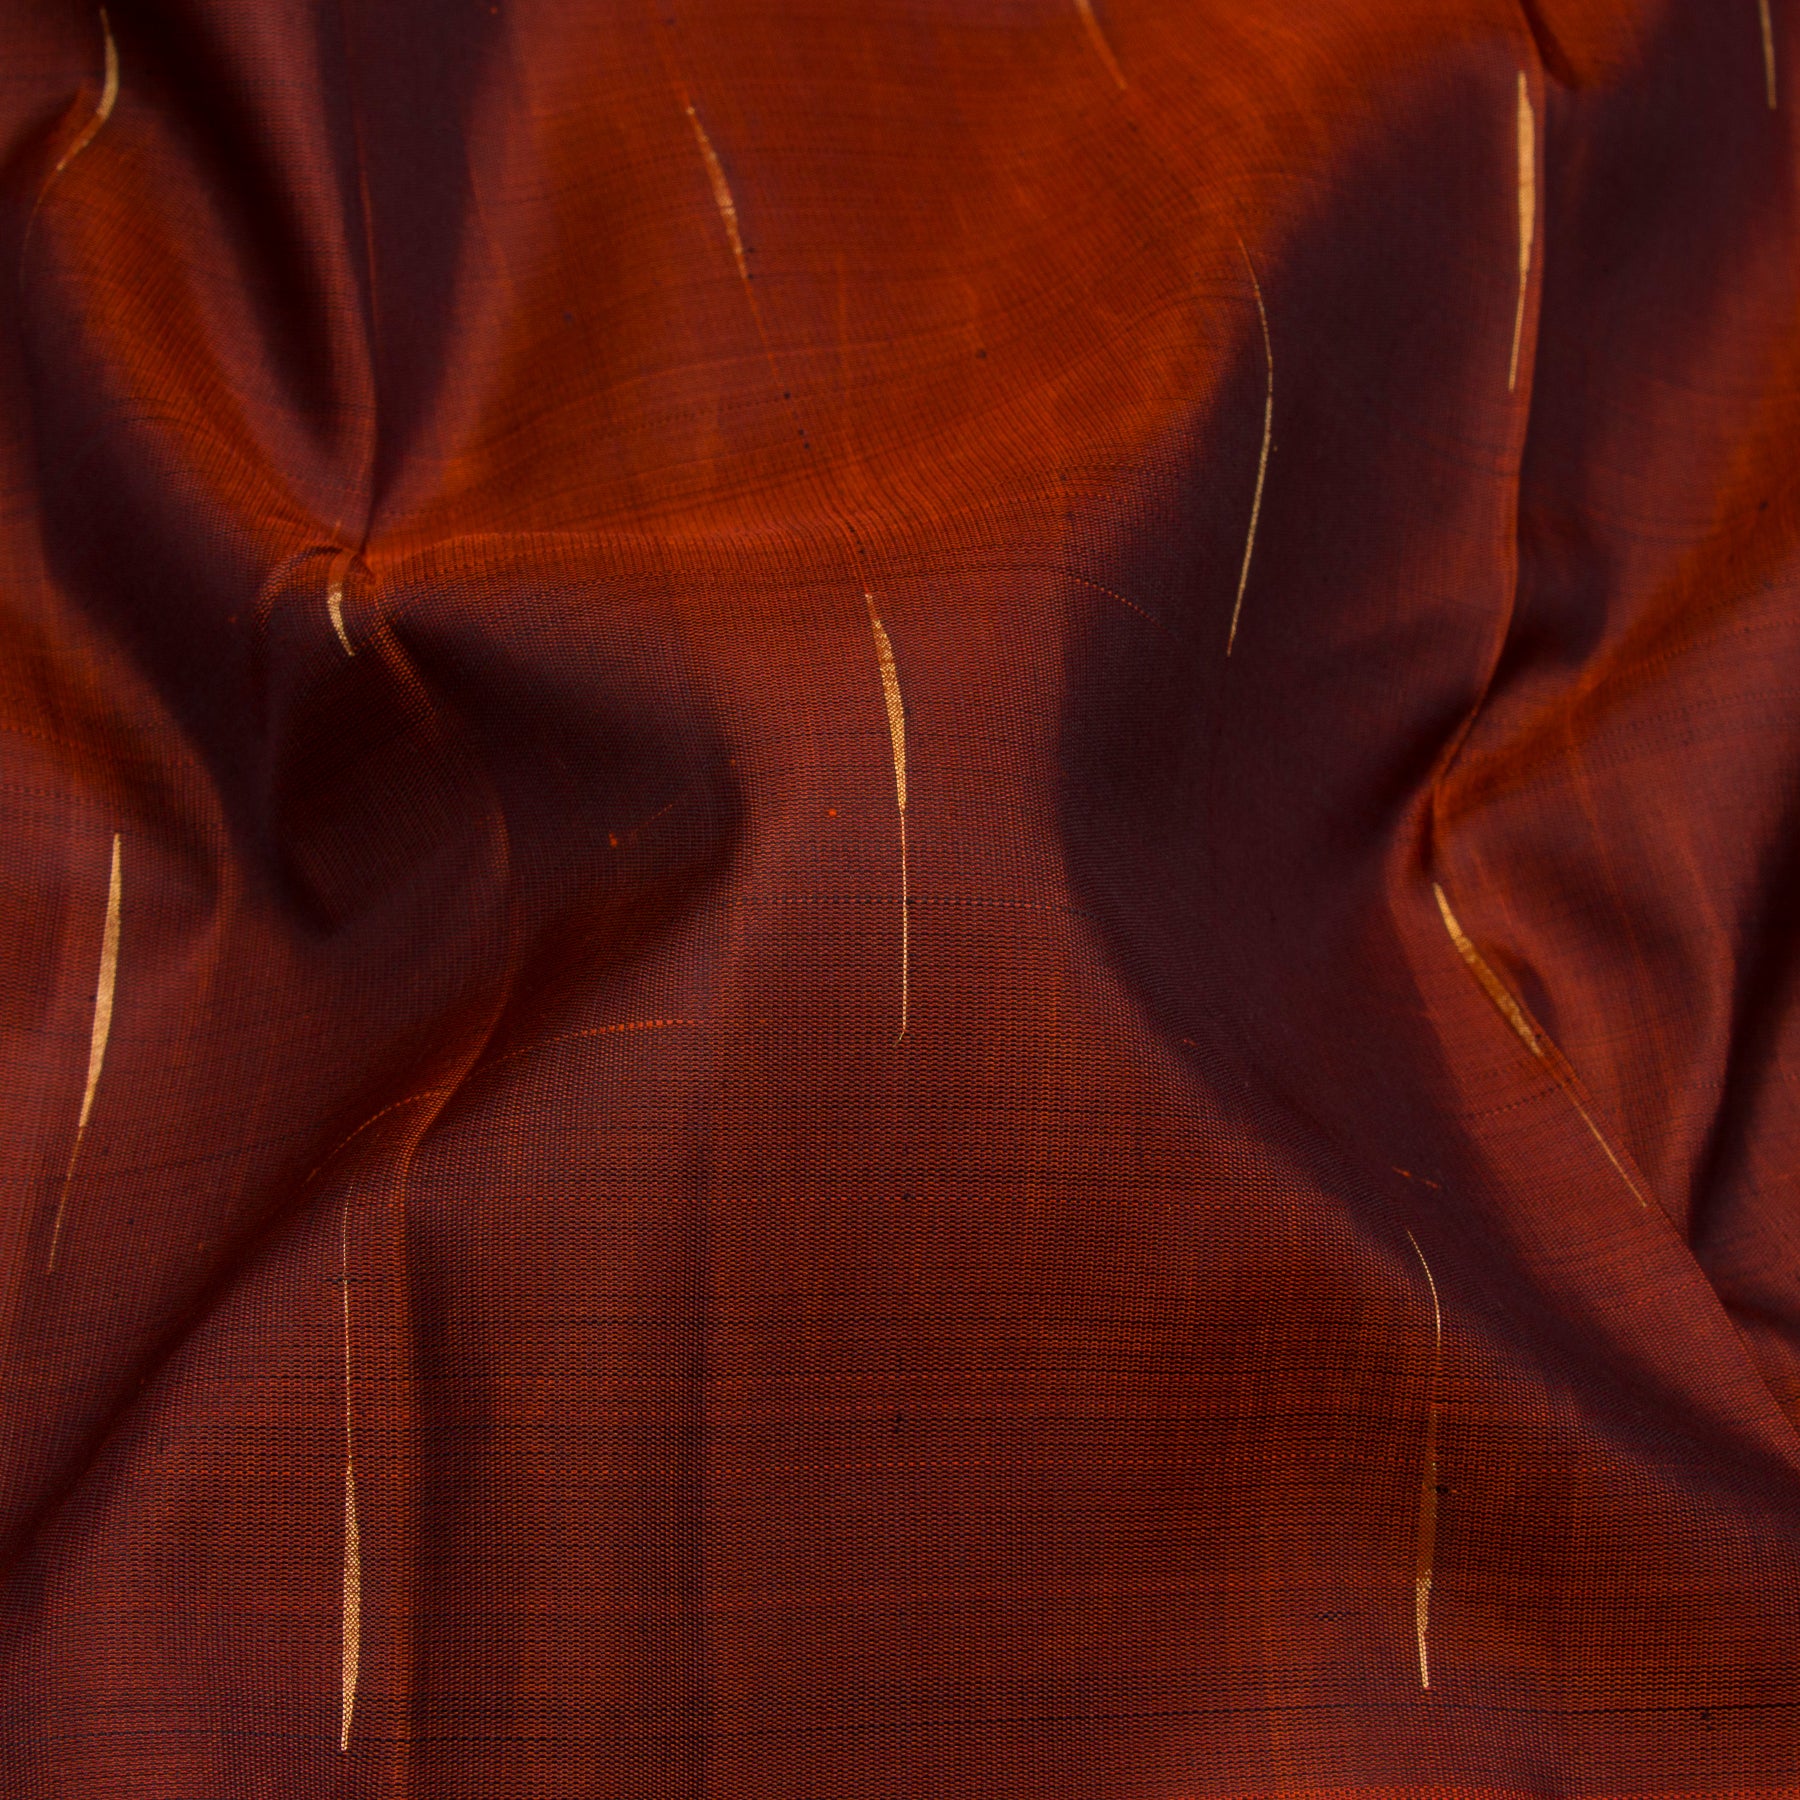 Kanakavalli Kanjivaram Silk Sari 23-599-HS001-03975 - Fabric View